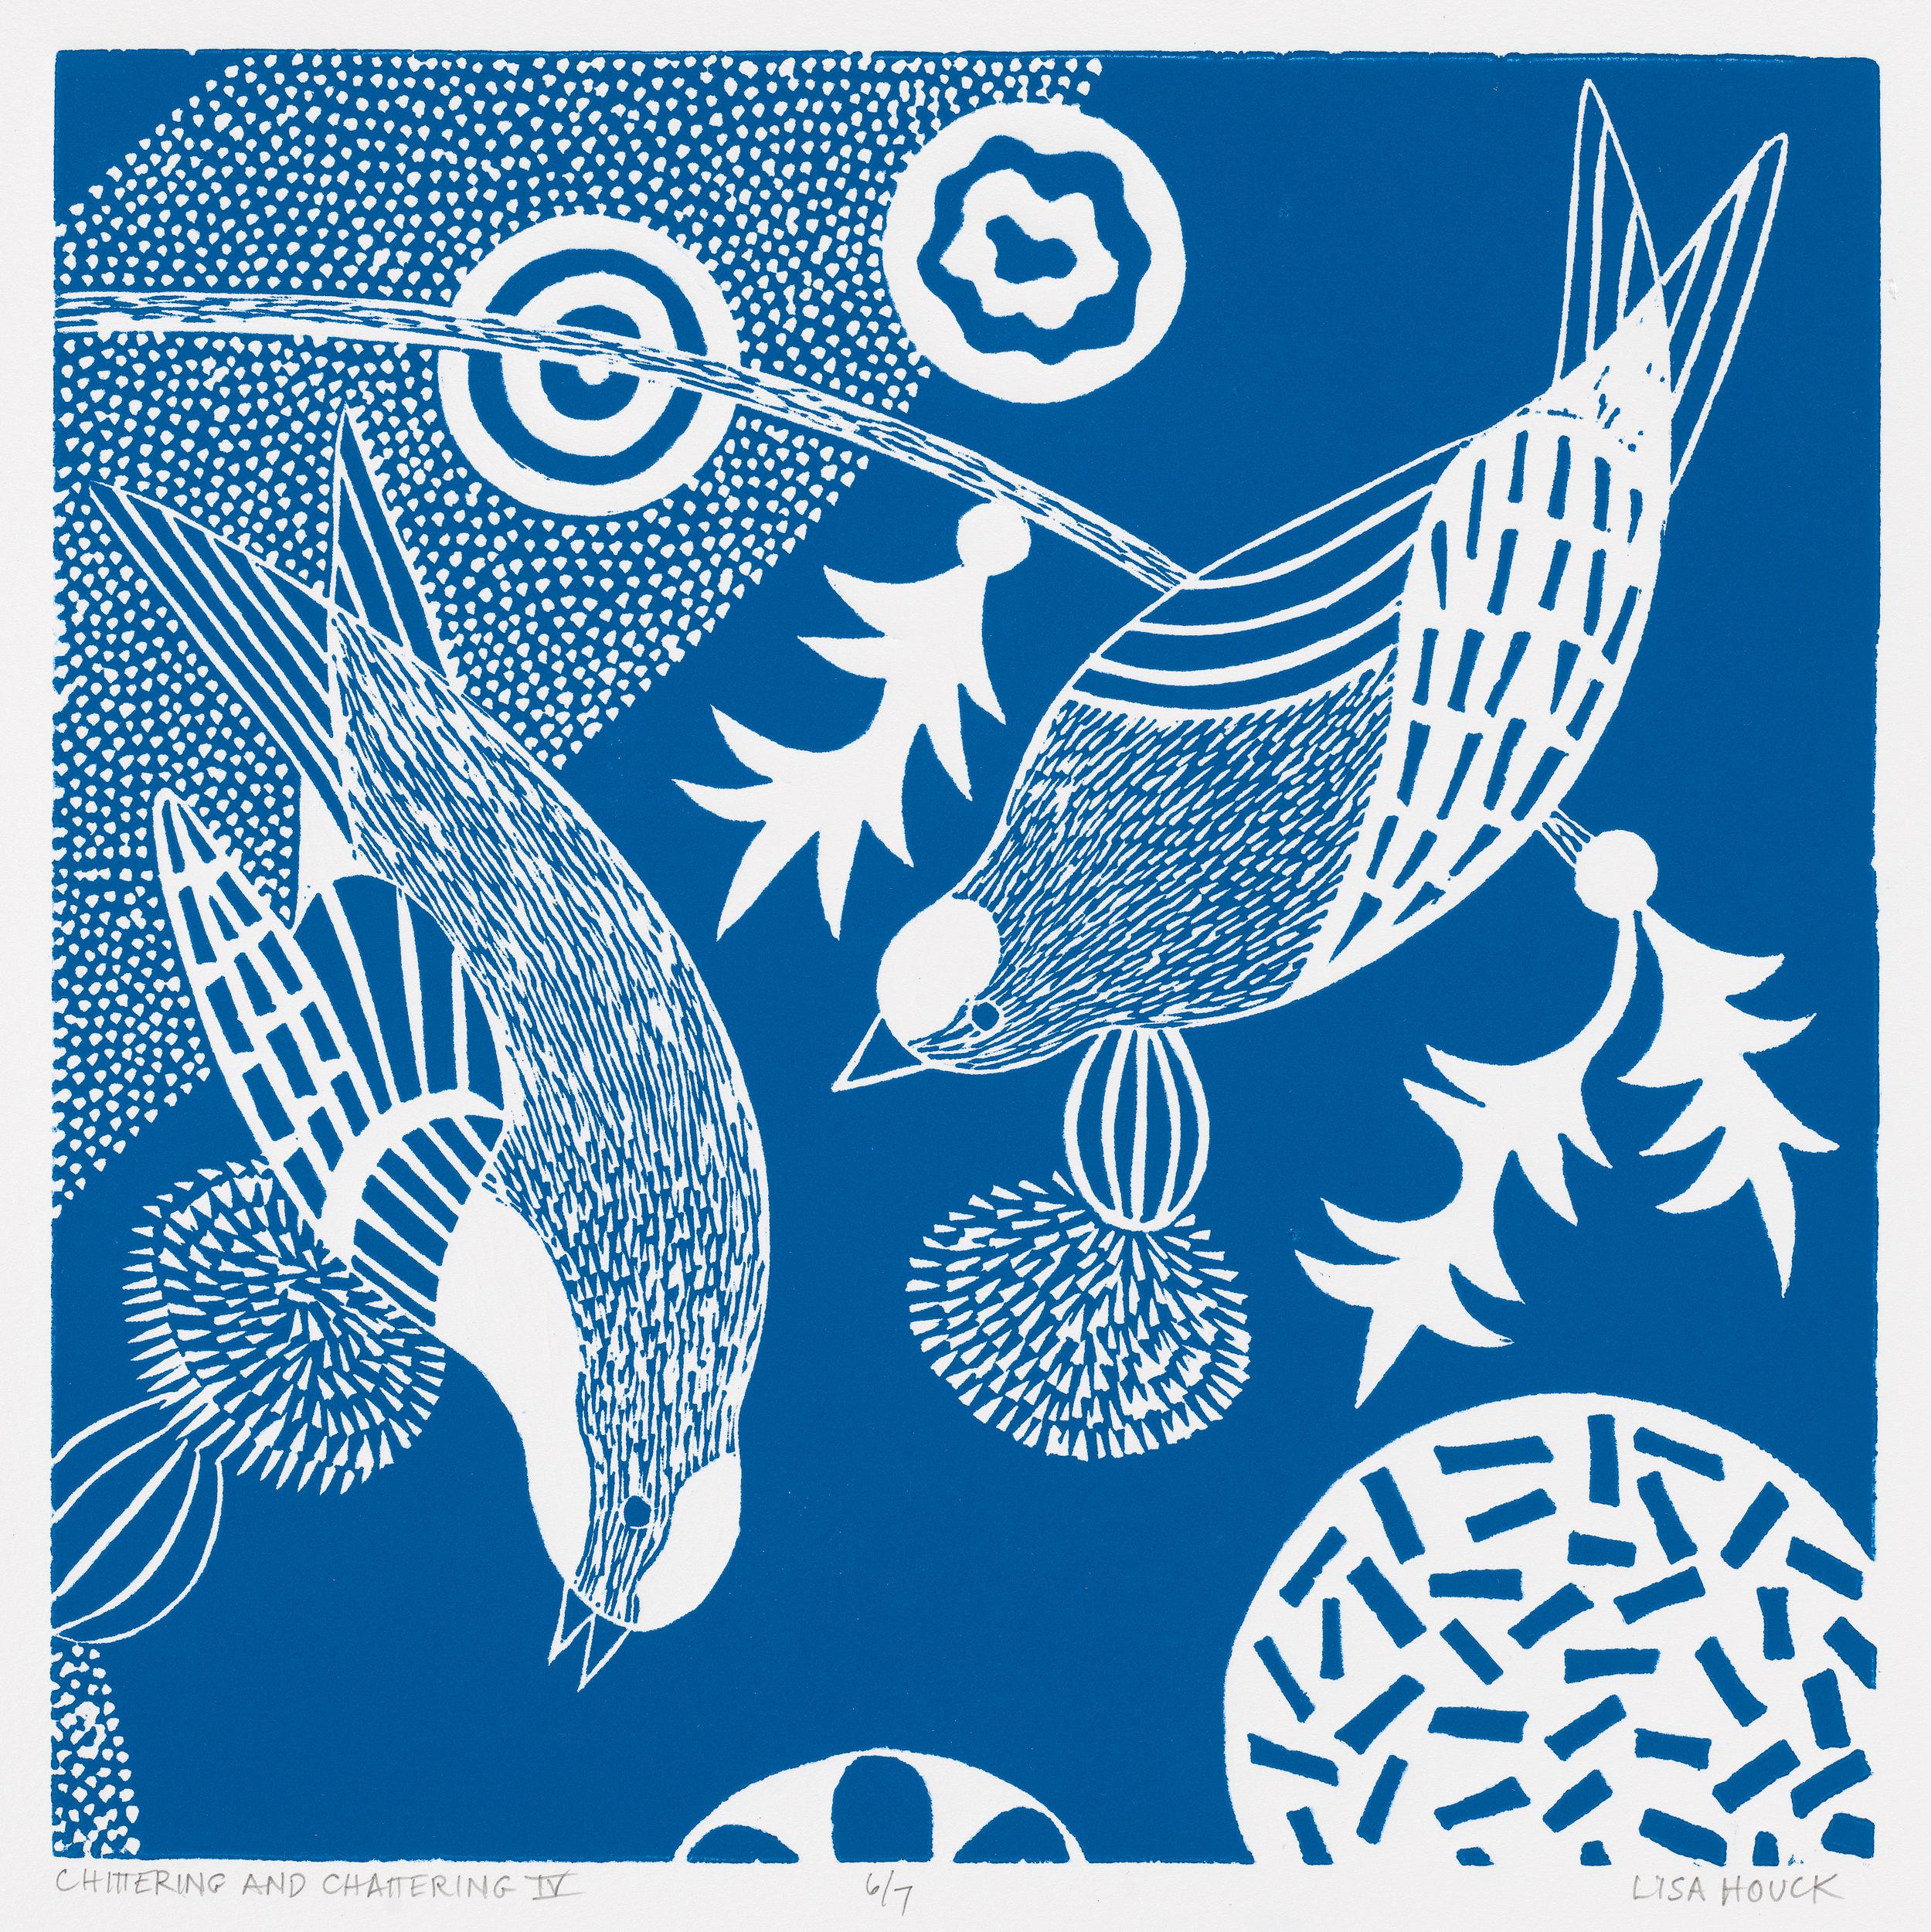 Animal Print Lisa Houck - ""Chittering & Chattering IV" série de linogravures d'oiseaux d'inspiration folklorique en bleu et blanc